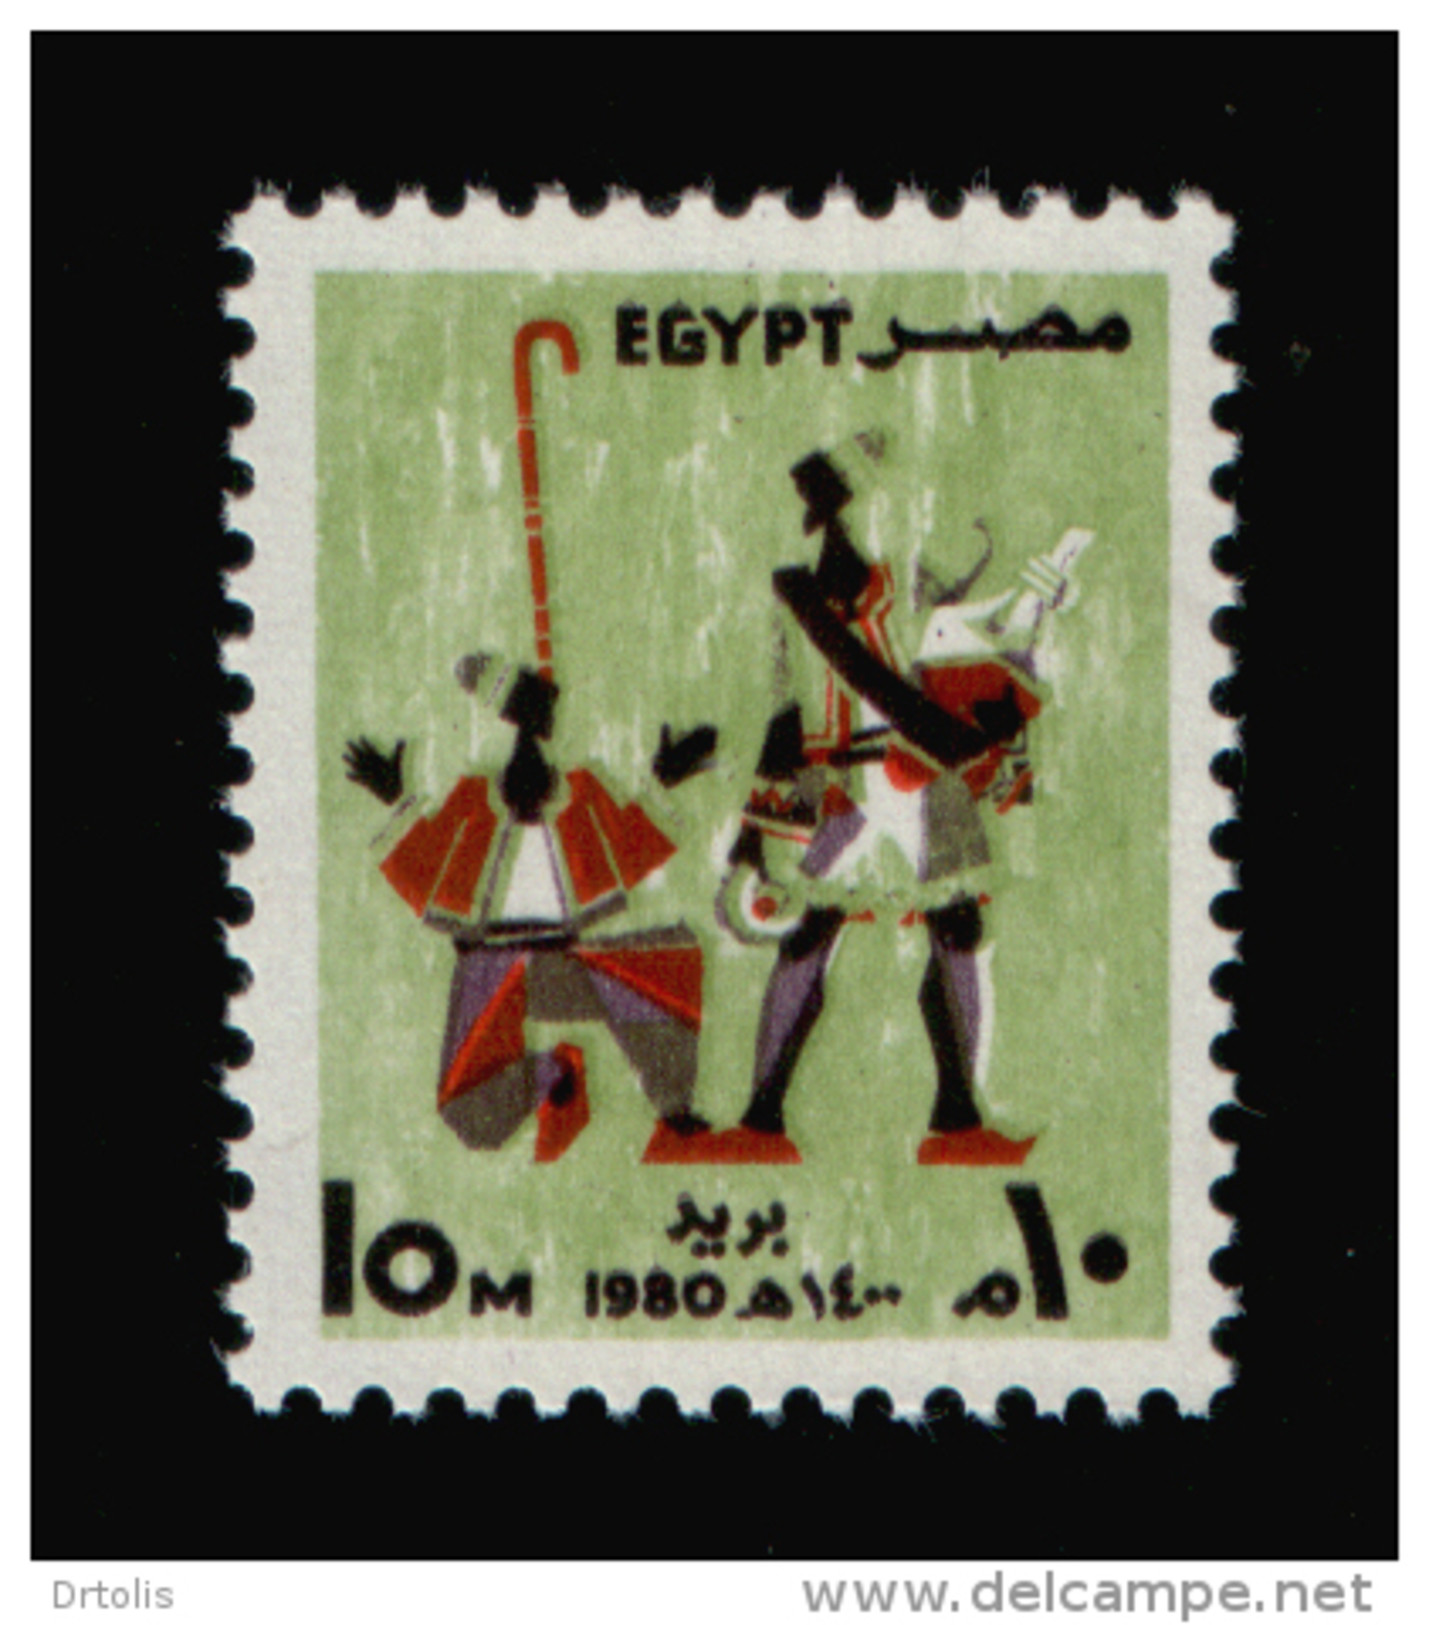 EGYPT / 1980 / FESTIVALS / ERKSOUS ( LICORICE ) SELLER / NAKRAZAN PLAYER / MNH / VF - Nuovi